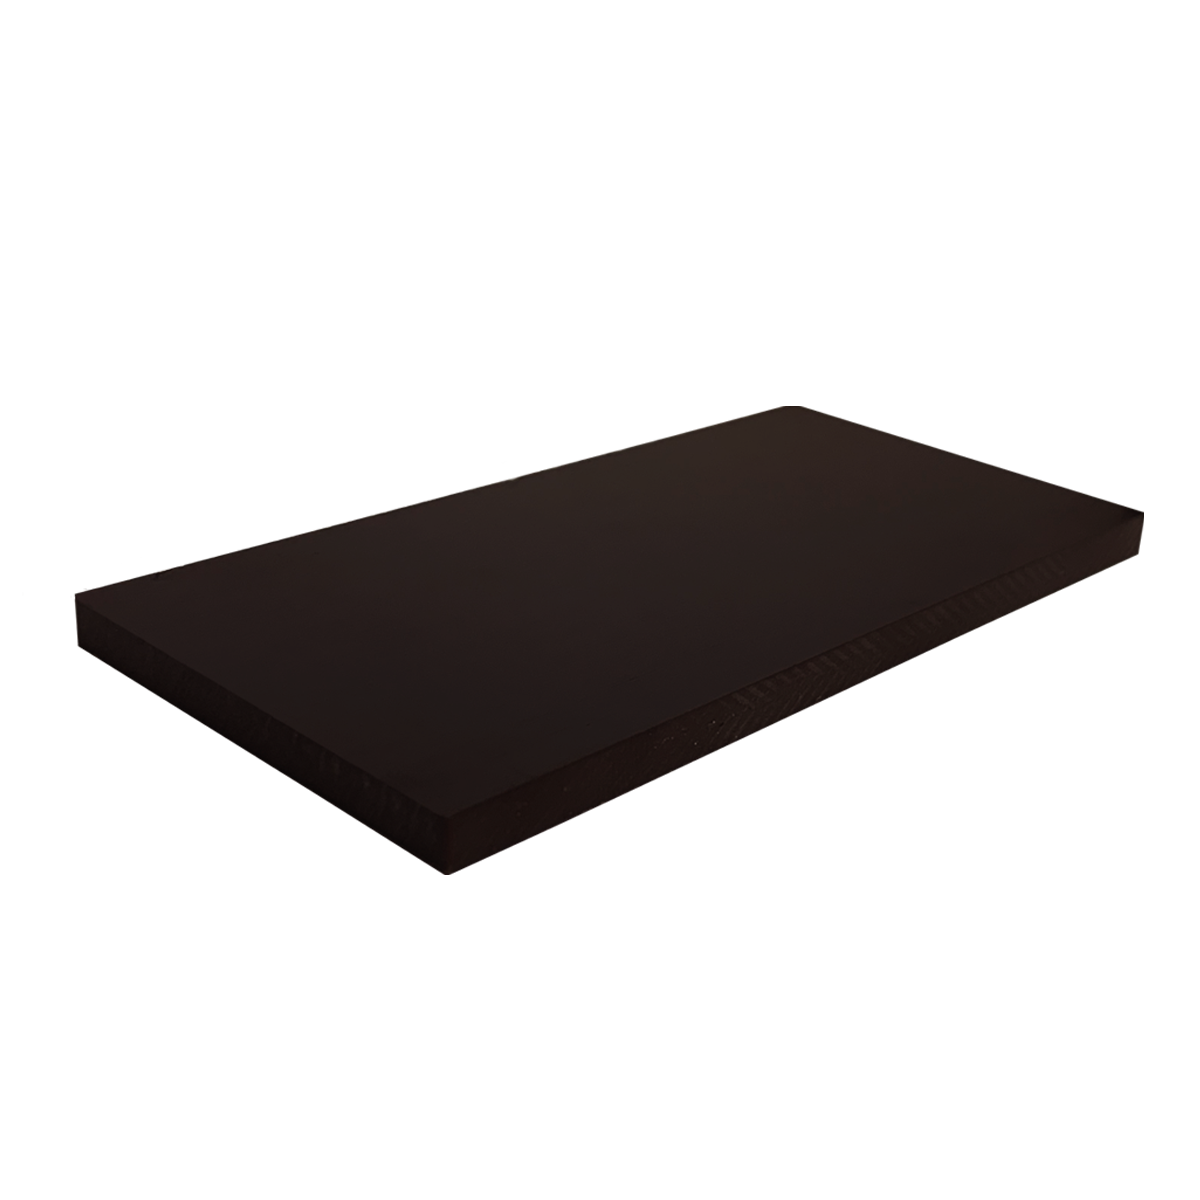 15 x 1025 x 1050 mm -- Hartpapier Platten Hp 2061, PFCP 201